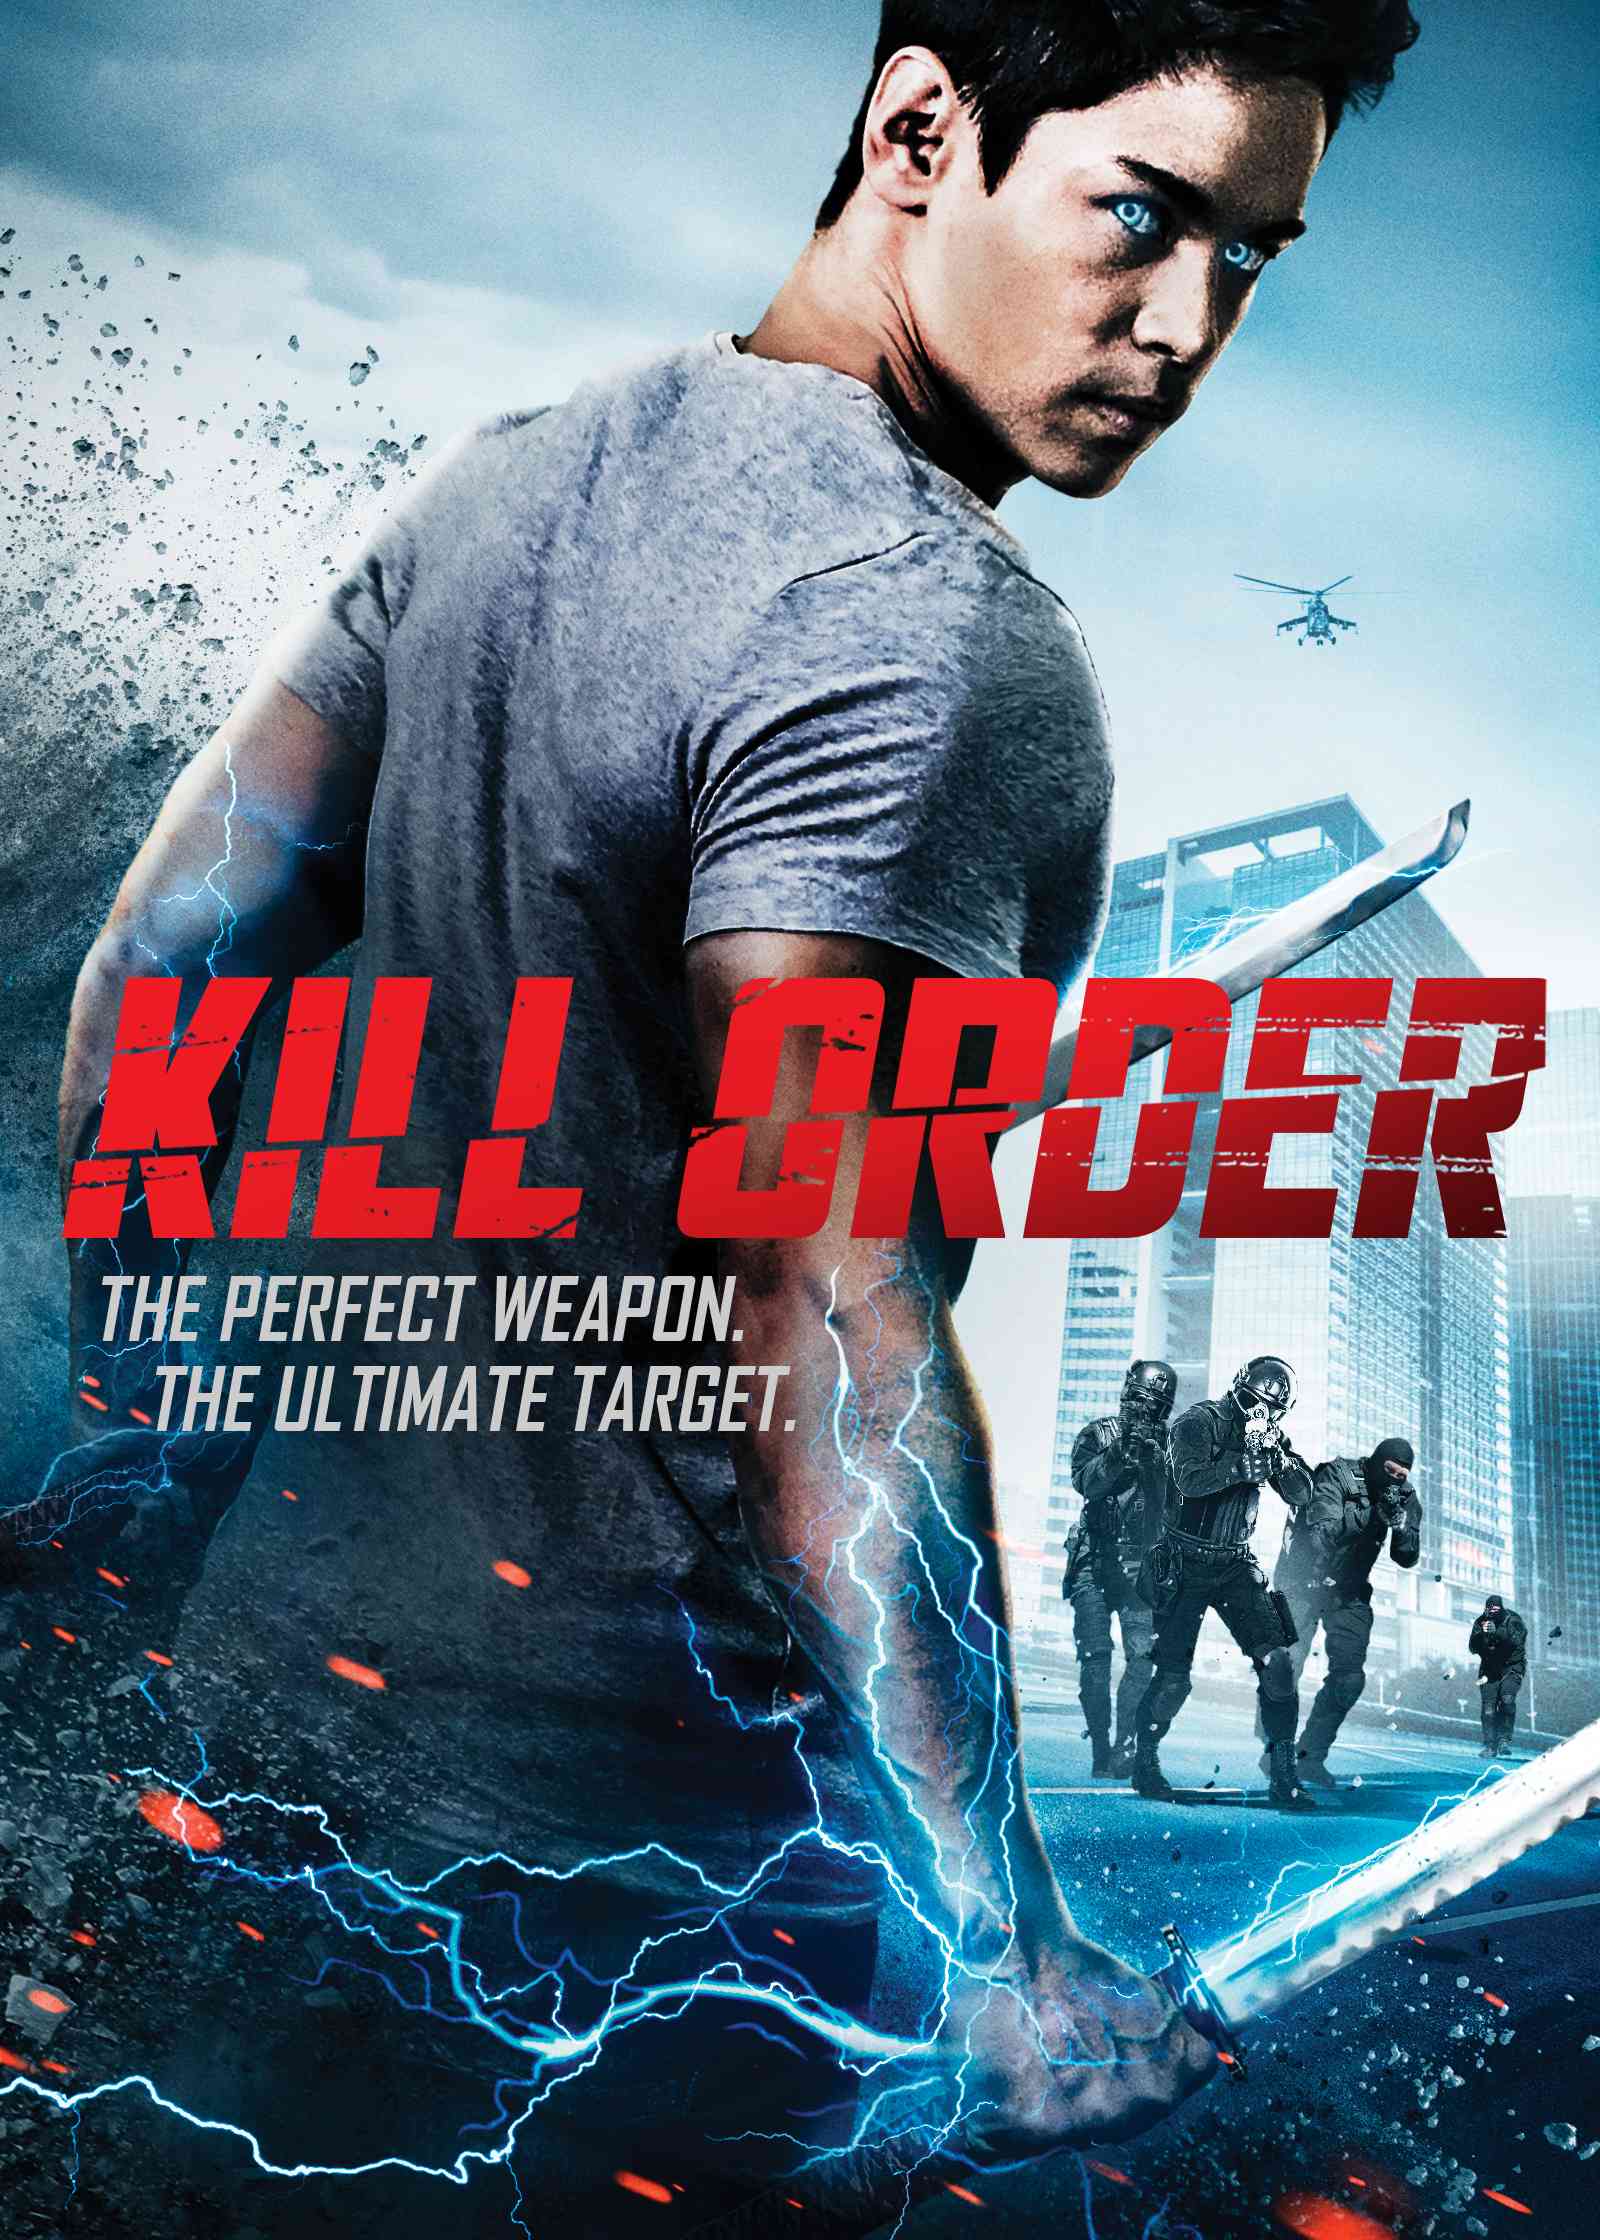 FULL MOVIE: Kill Order (2017) [Action]